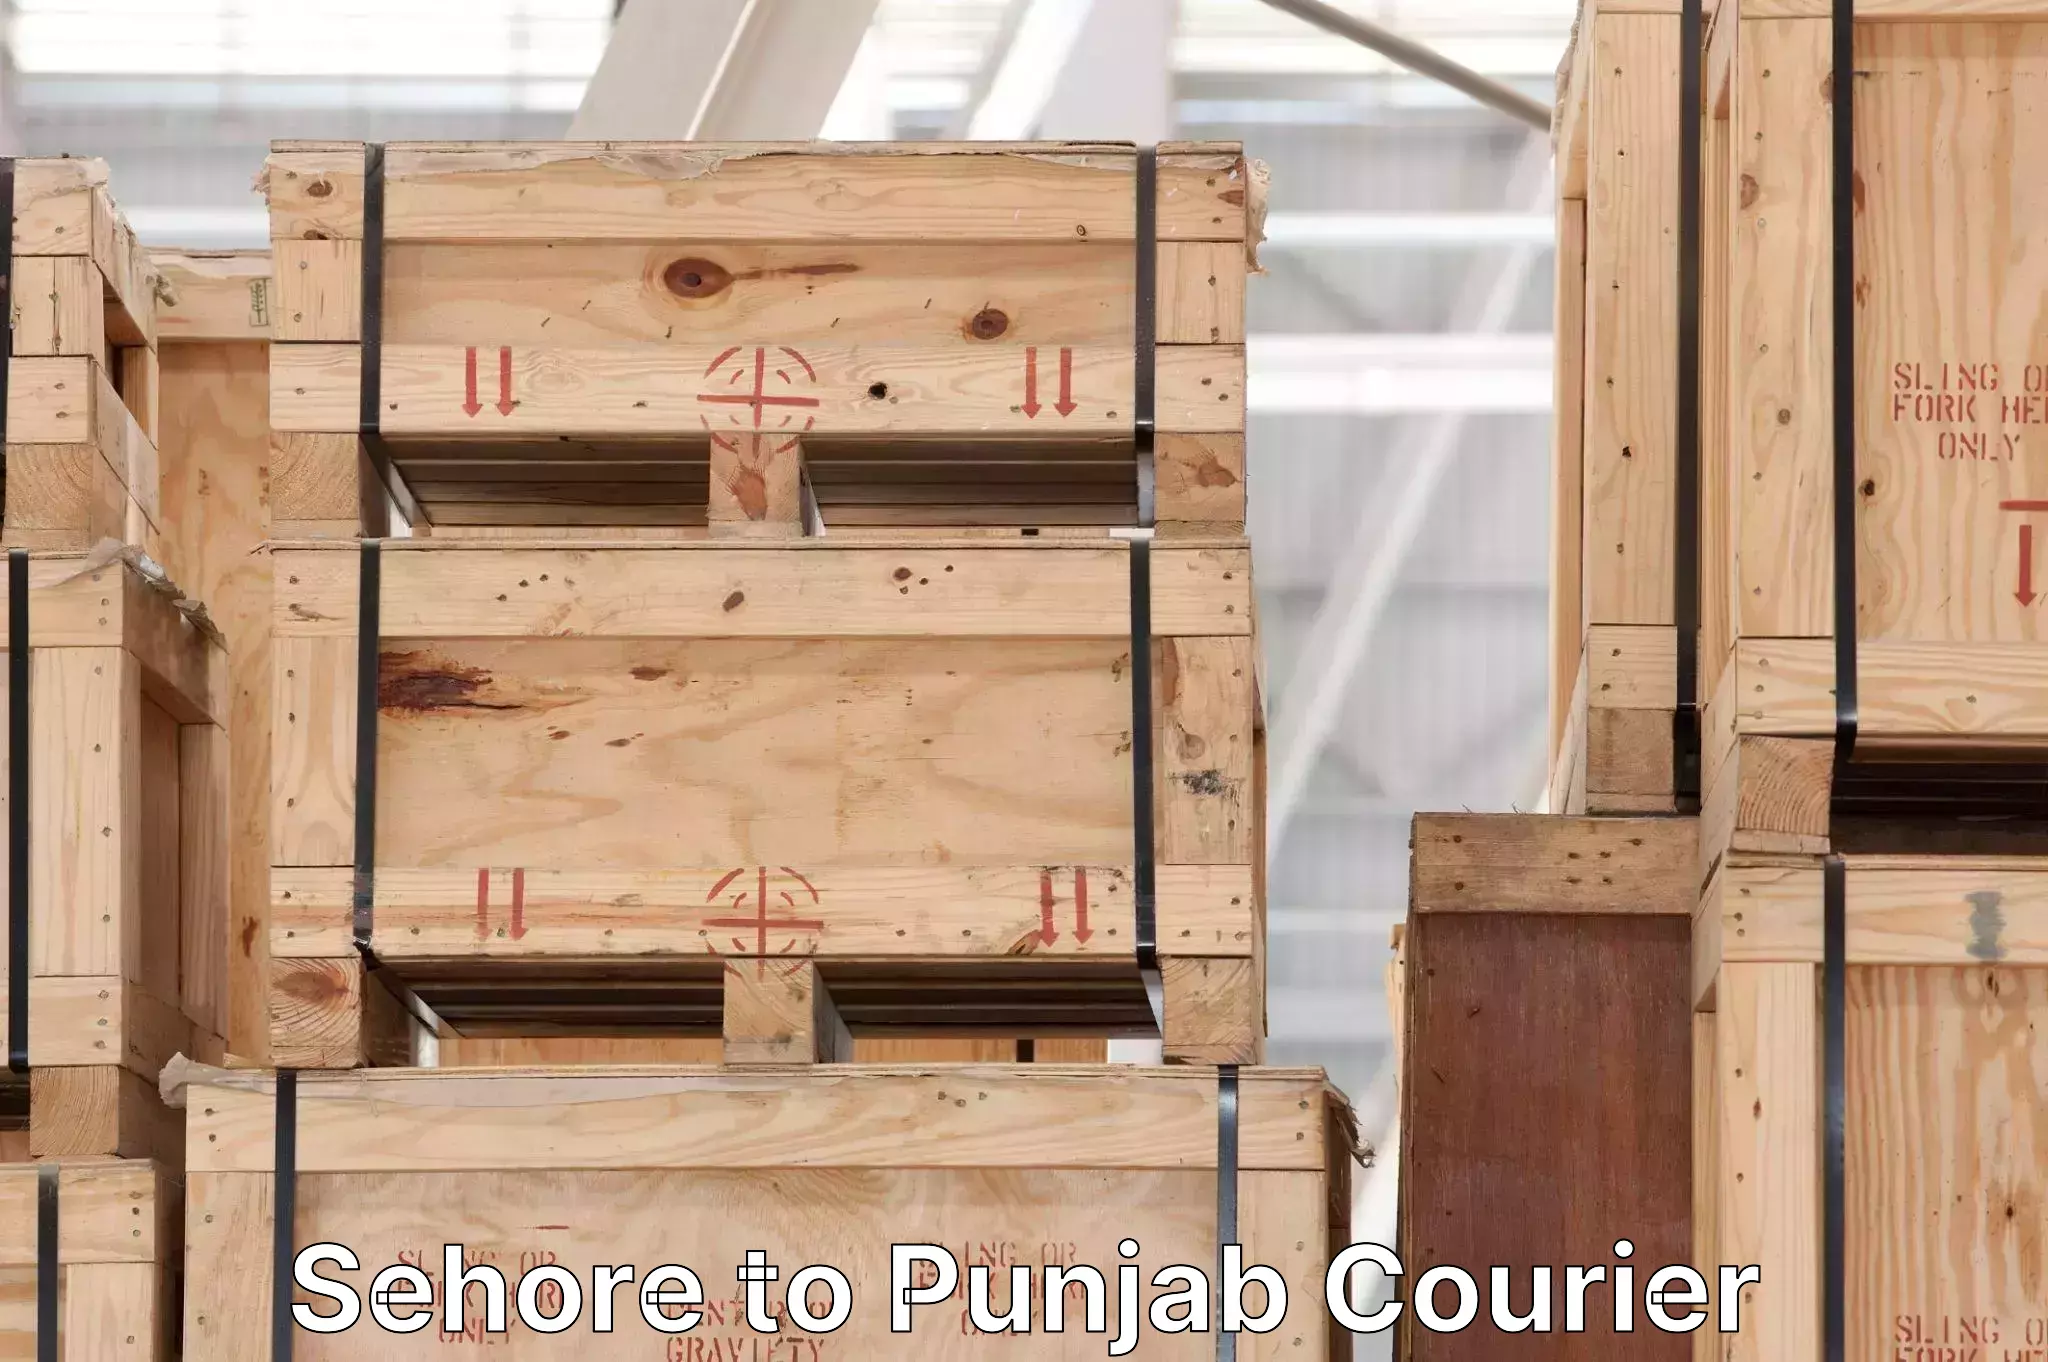 Baggage transport network Sehore to Punjab